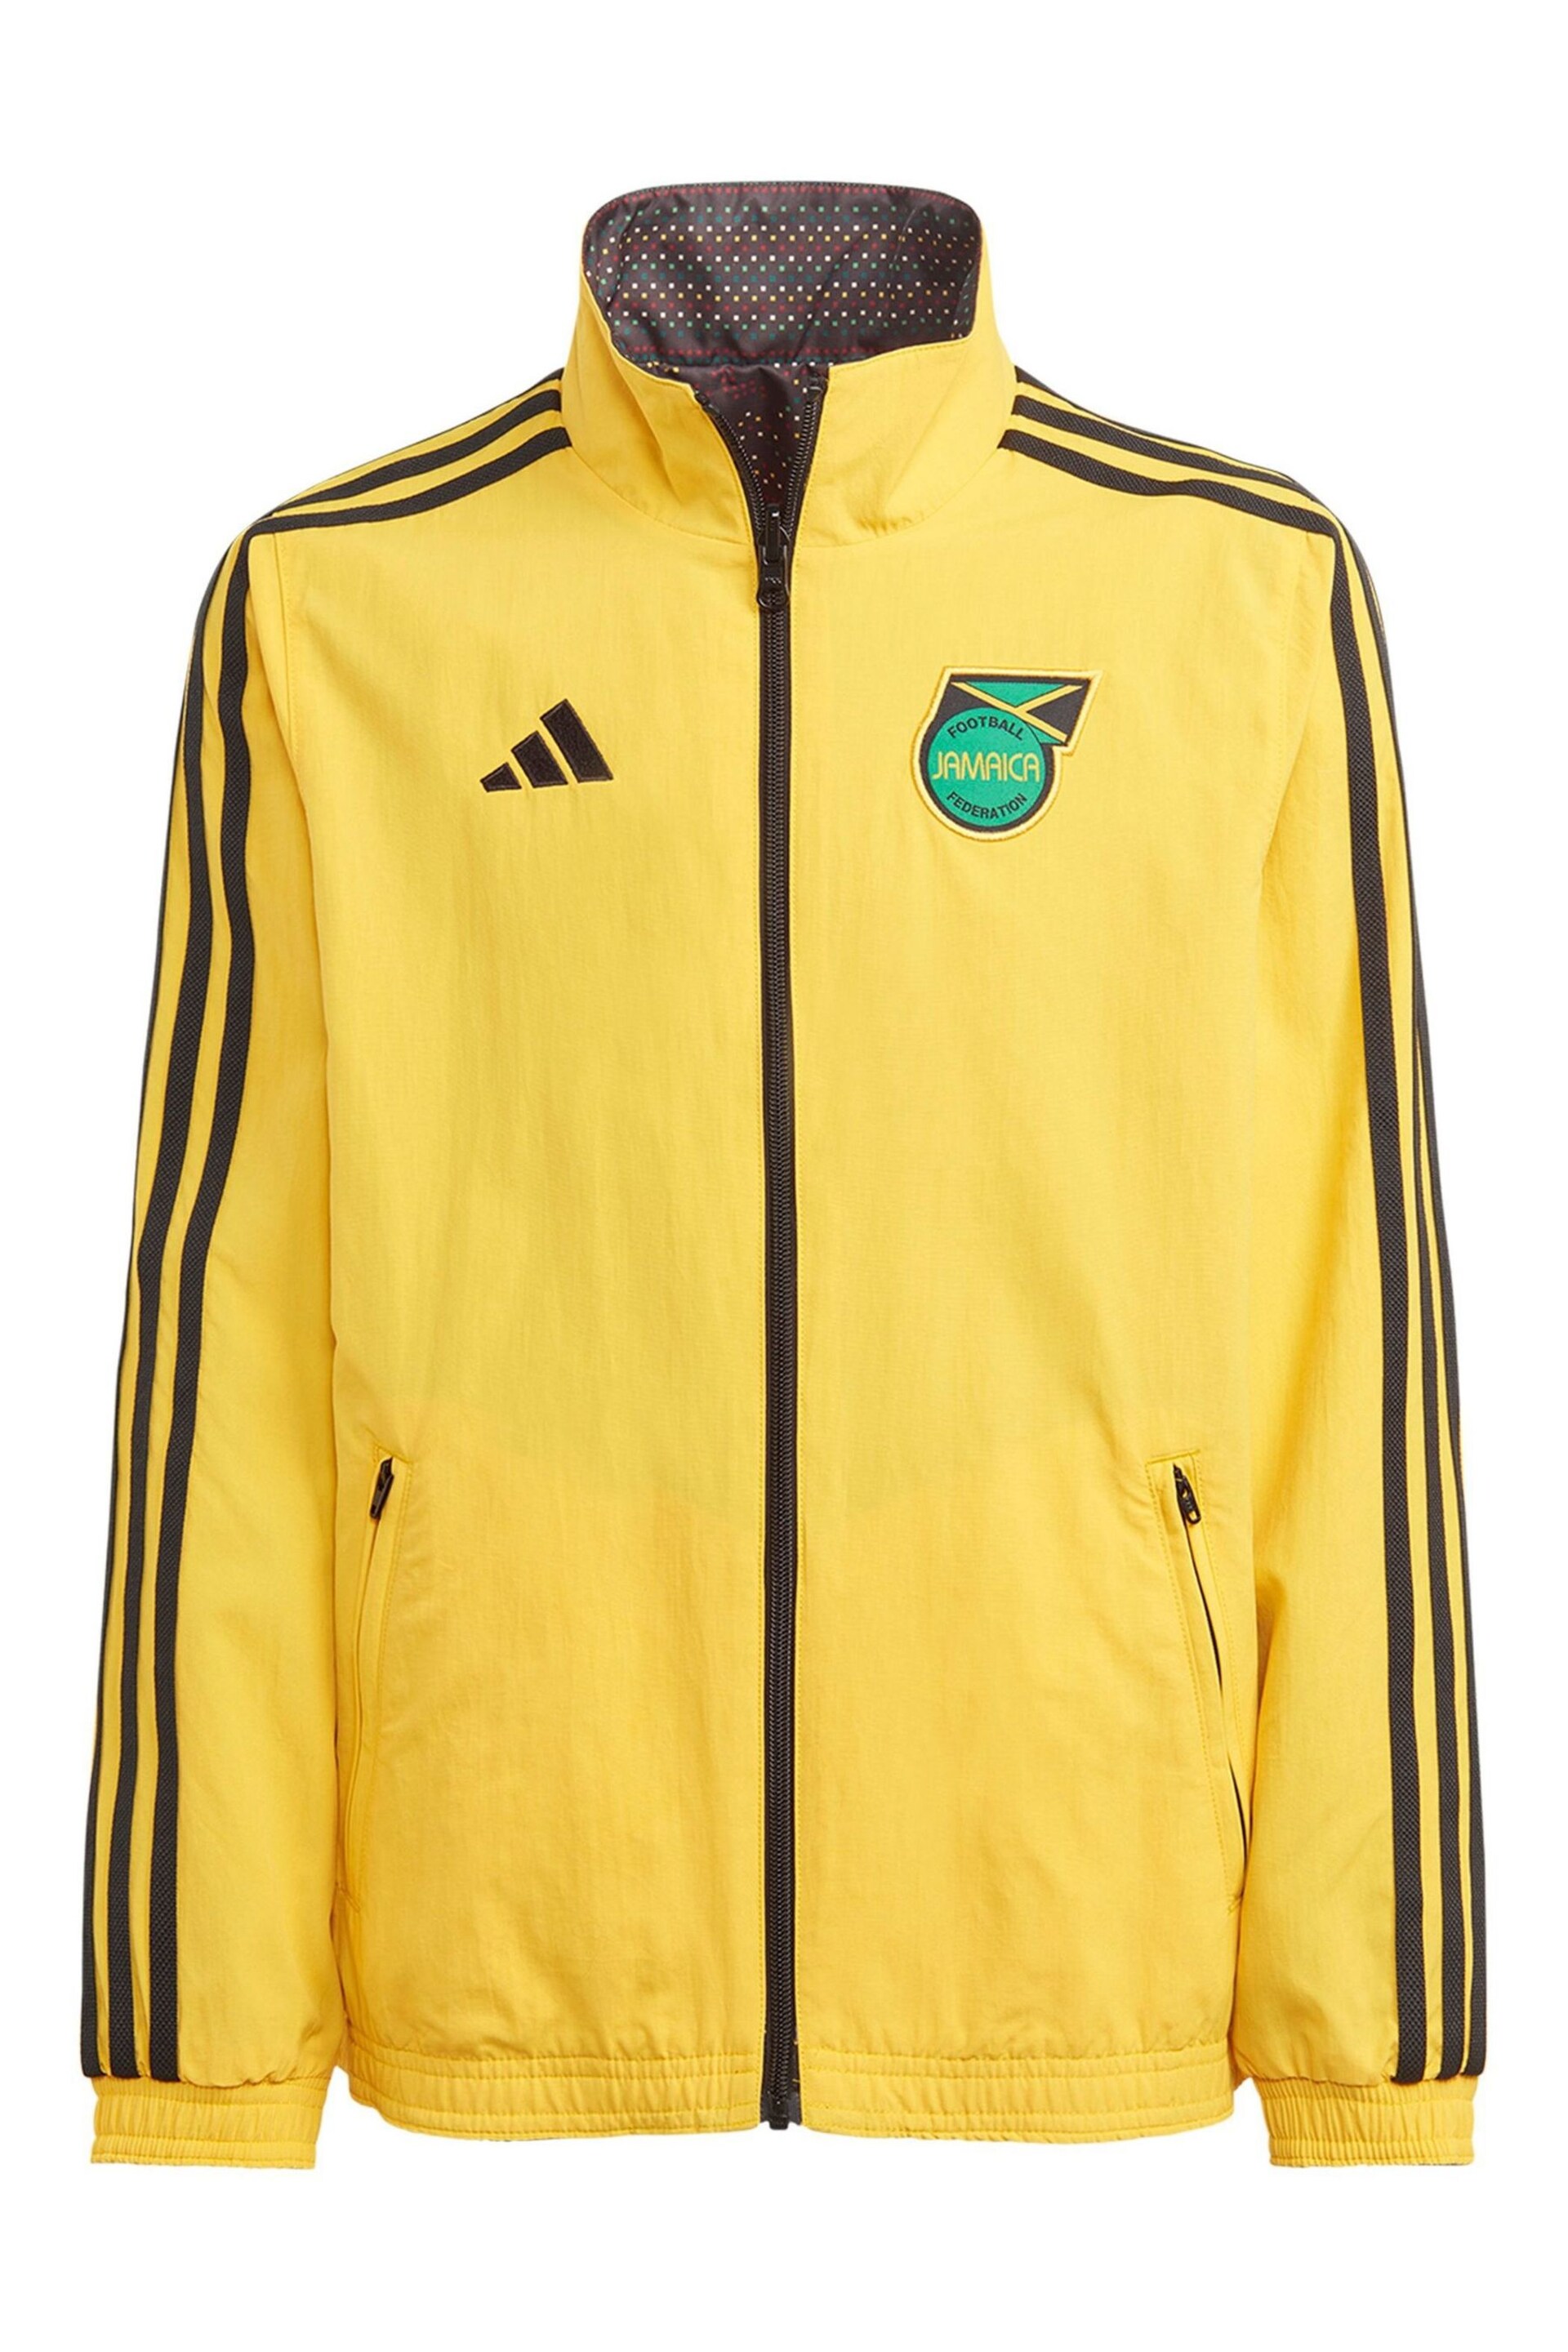 adidas Yellow Jamaica Anthem Jacket - Image 2 of 4